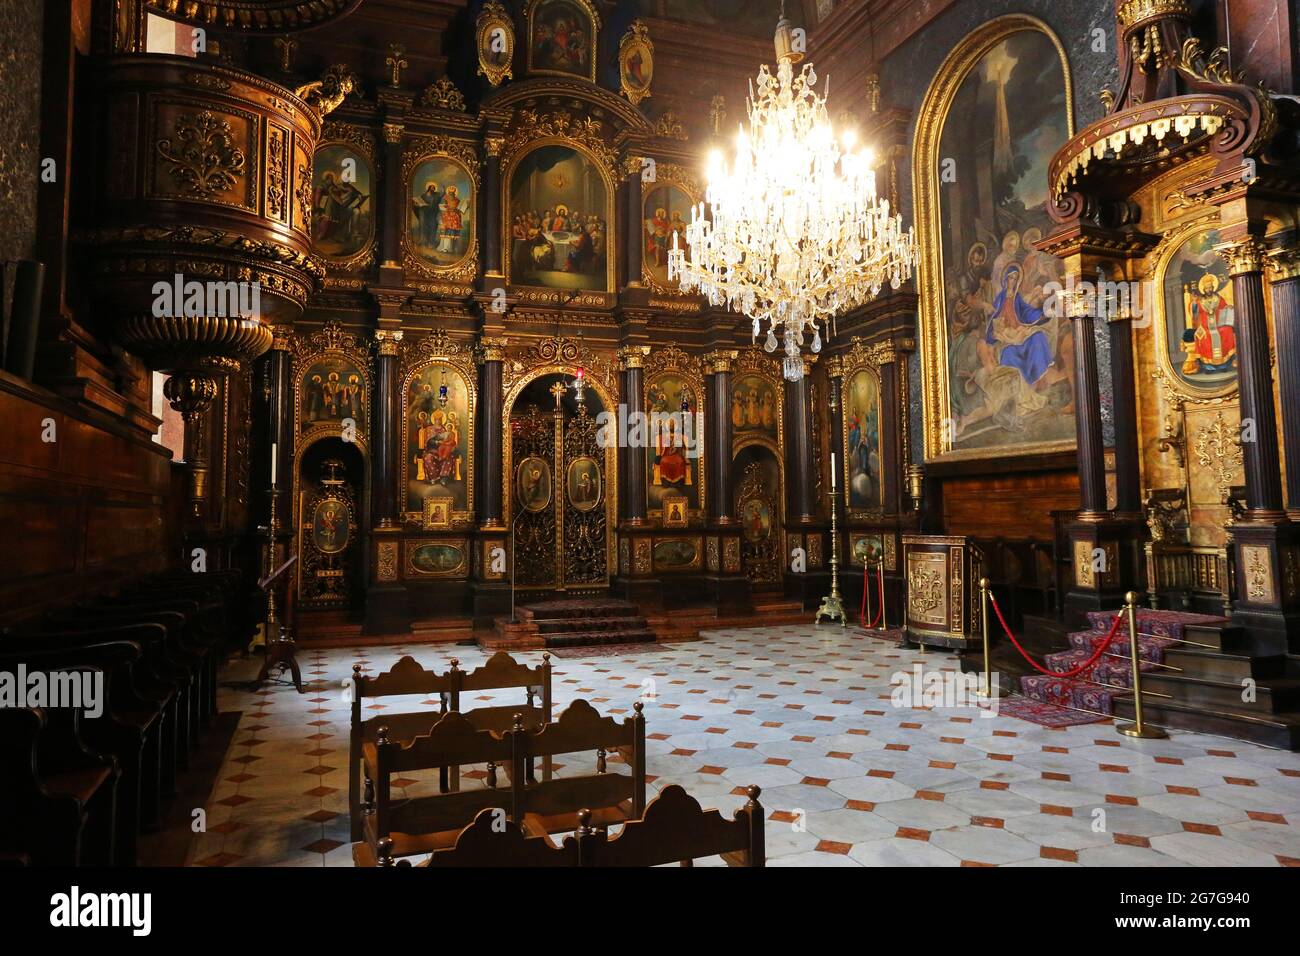 Wien Kirche, Wien, versteckte, wunderschöne Orthodoxe Kirche im Zentrum der Landeshauptstadt von Österreich, lädt ein zur Einkehr und Stille. Stock Photo